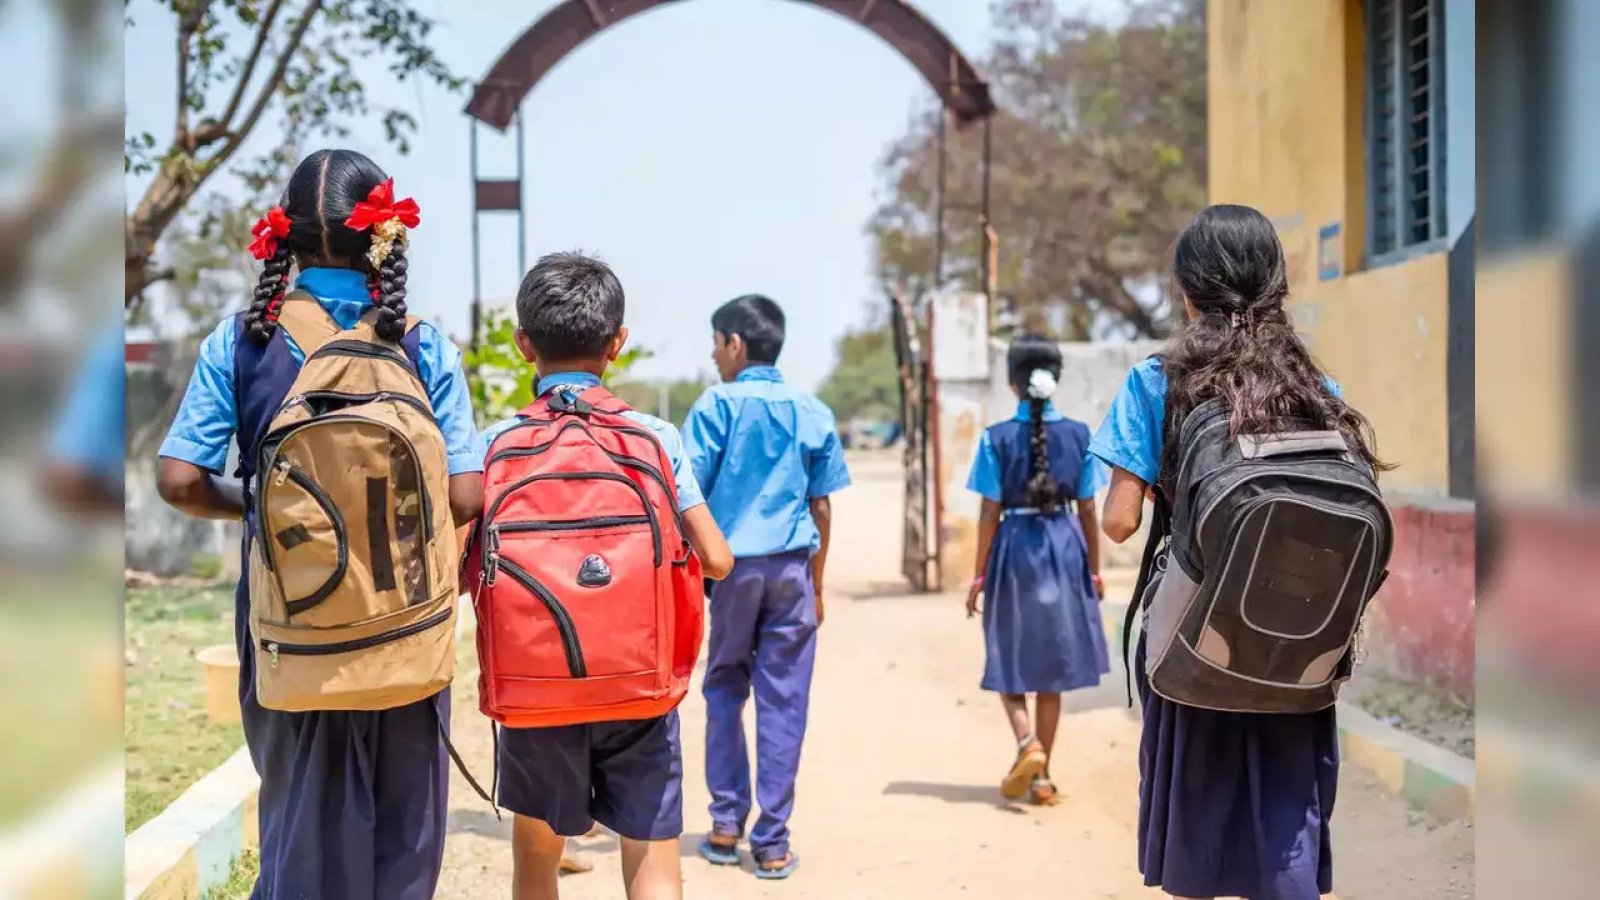 असम राज्यव्यापी अभियान में छात्रों, स्कूलों का मूल्यांकन करेगा